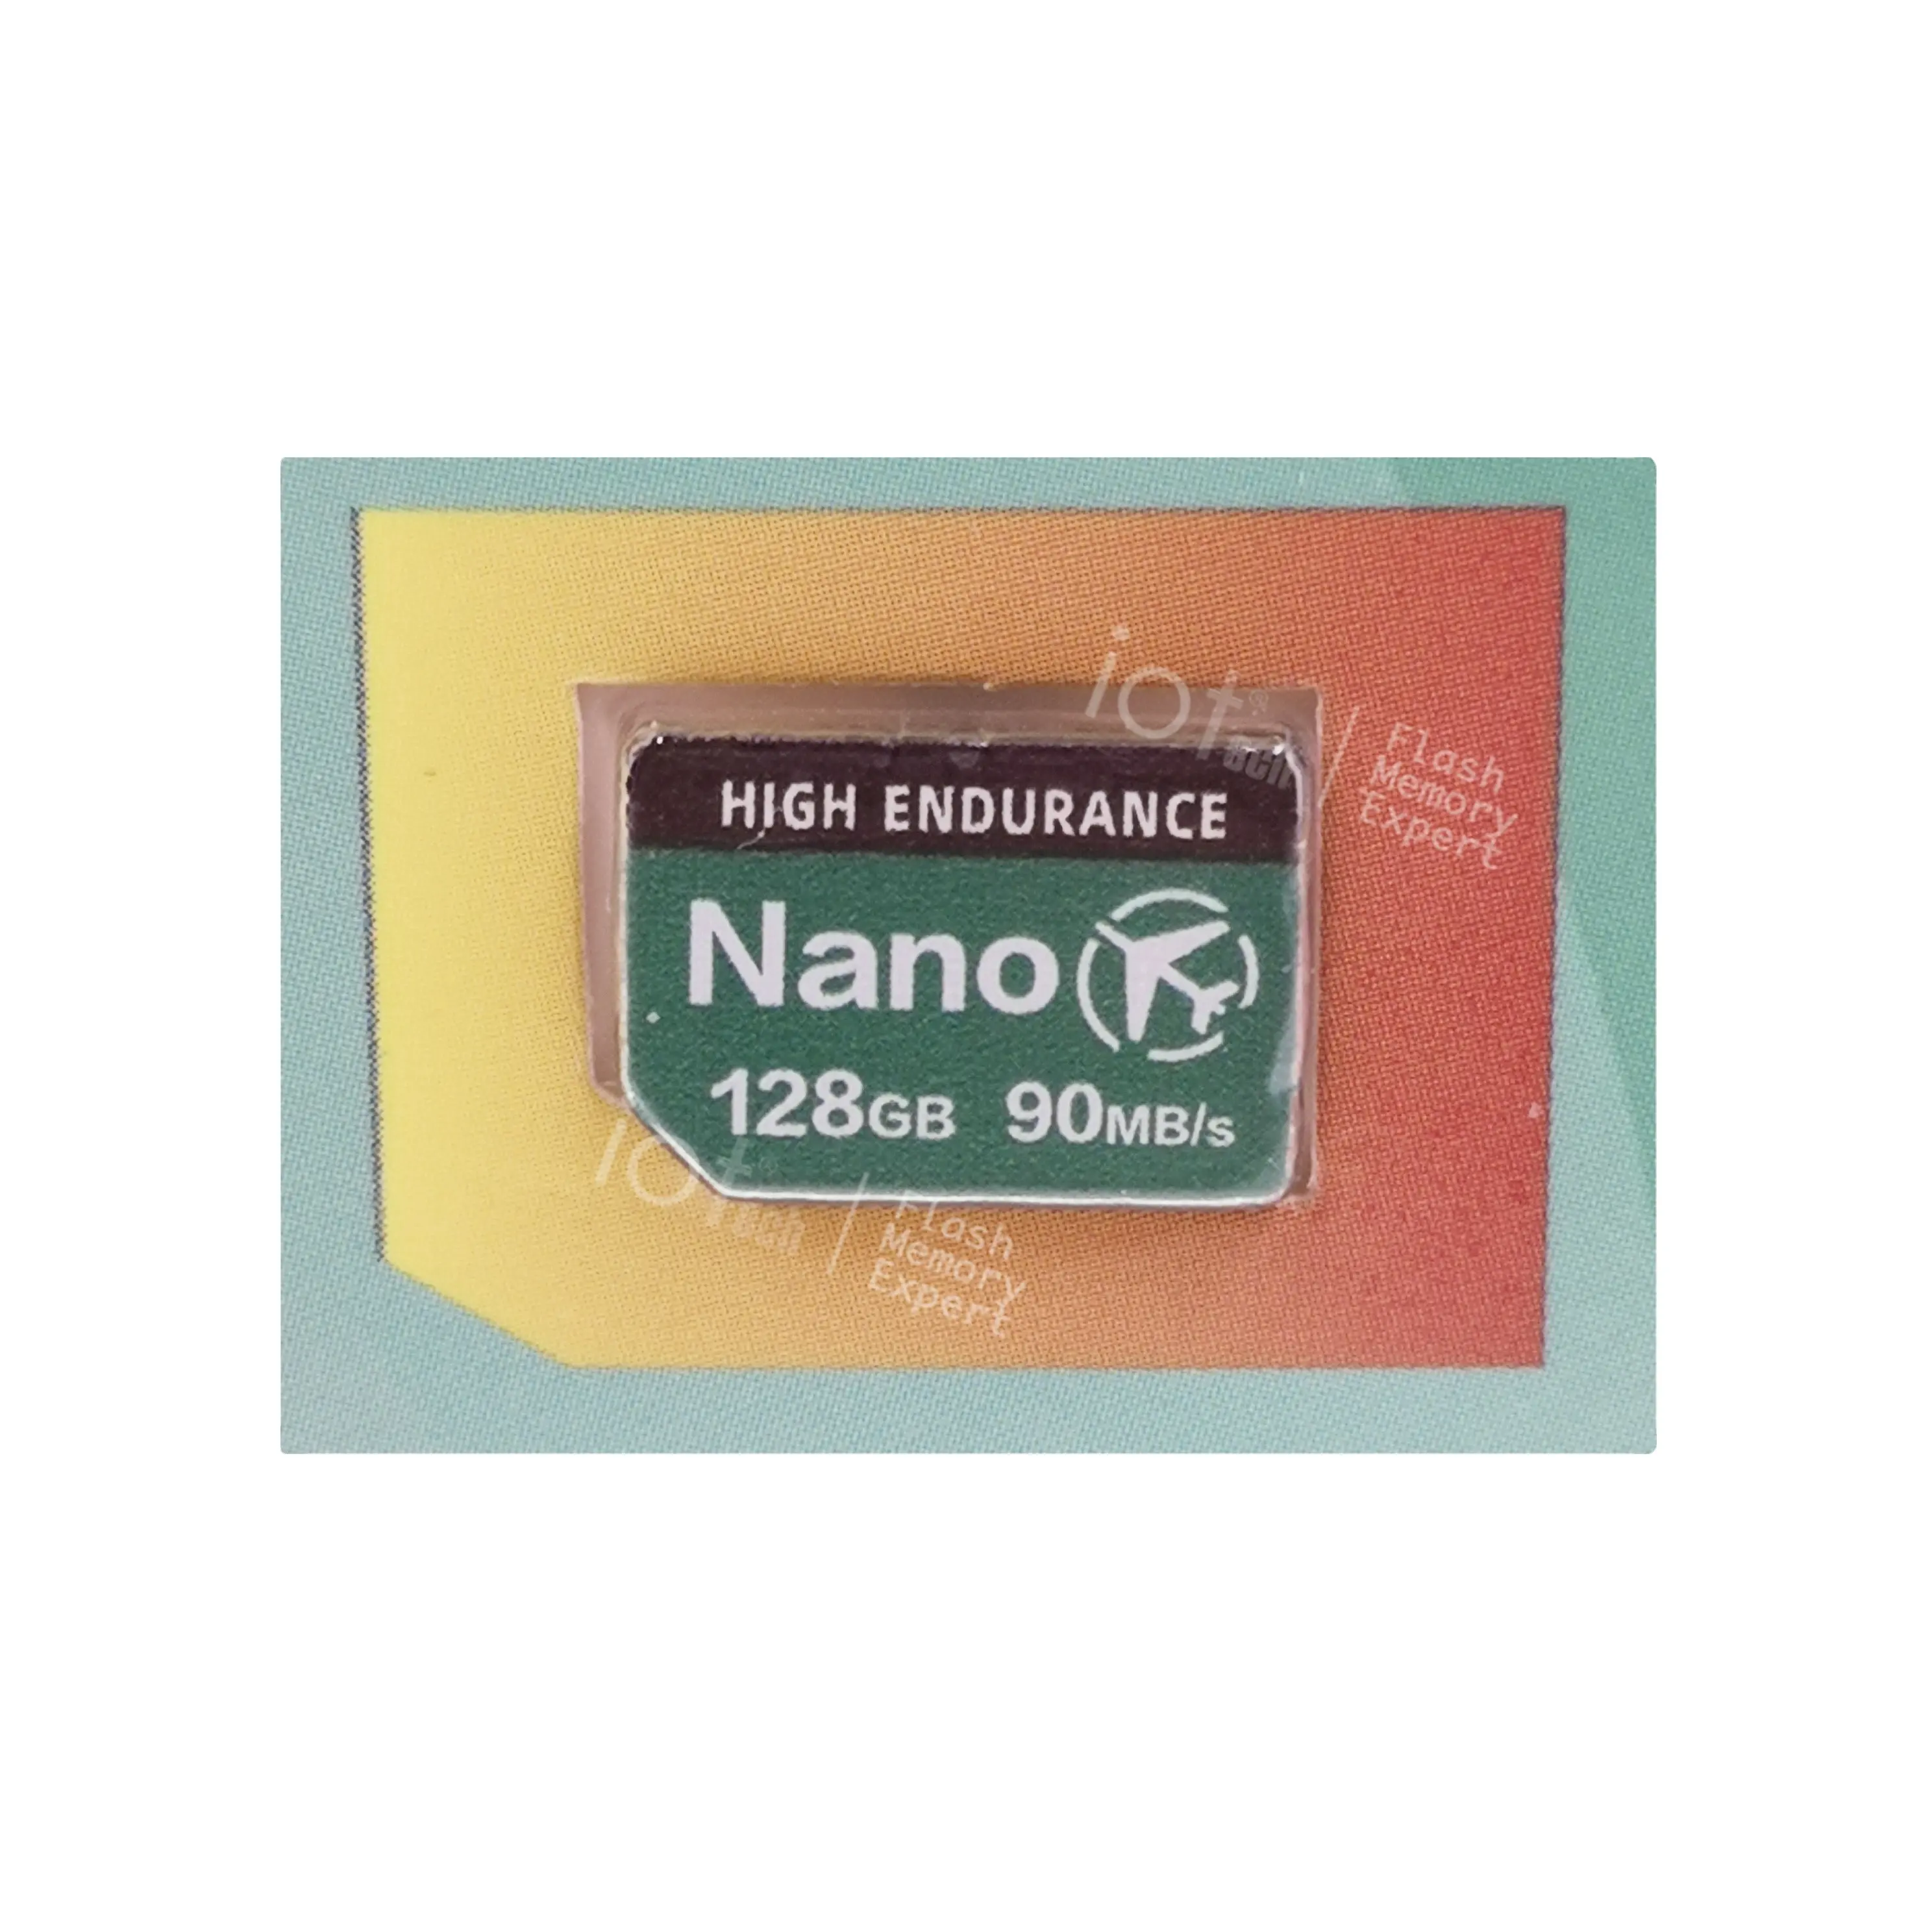 Oem Nm/Nano Card 128Gb 90 Mb/s Voor Mobiele Telefoon Hoge Uithoudingsvermogen Nm/Nano Geheugenkaart